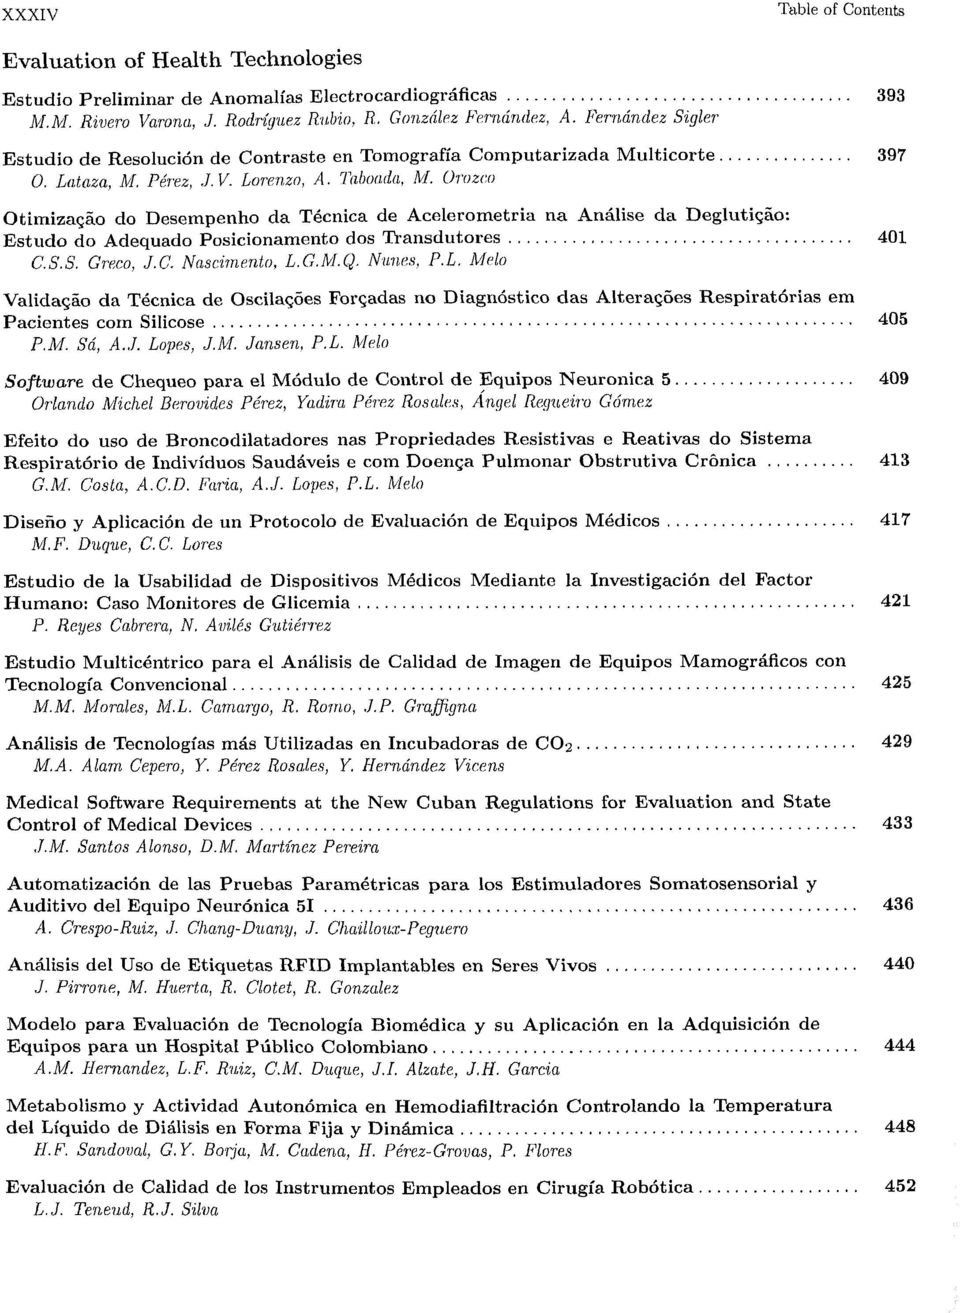 Orozco OtimizaQao do Desempenho da Tecnica de Acelerometria na Analise da Degluticao: Estudo do Adequado Posicionamento dos Transdutores 401 C.S.S. Greeo, J.C. Nascimento, L.